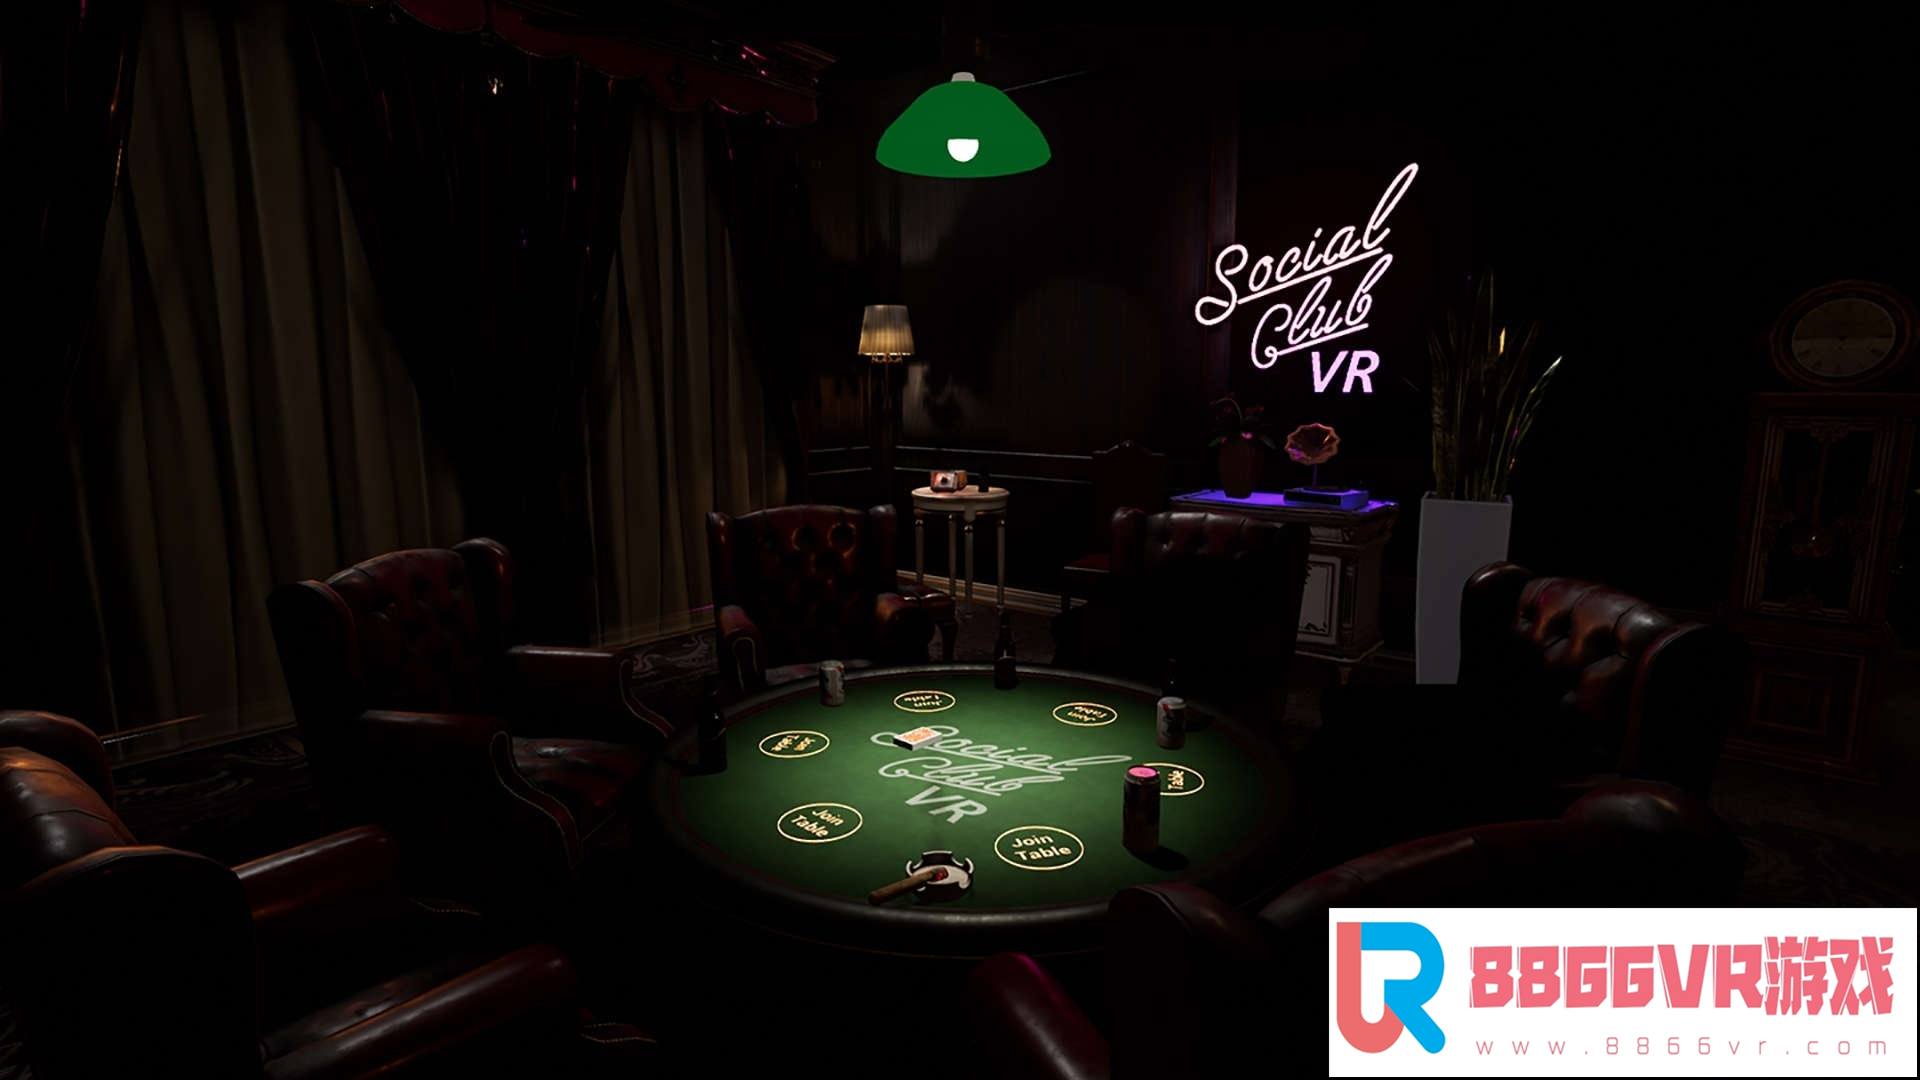 [VR交流学习] 联谊俱乐部 VR (Social Club VR : Casino Nights)6786 作者:307836997 帖子ID:170 破解,联谊,俱乐部,social,club